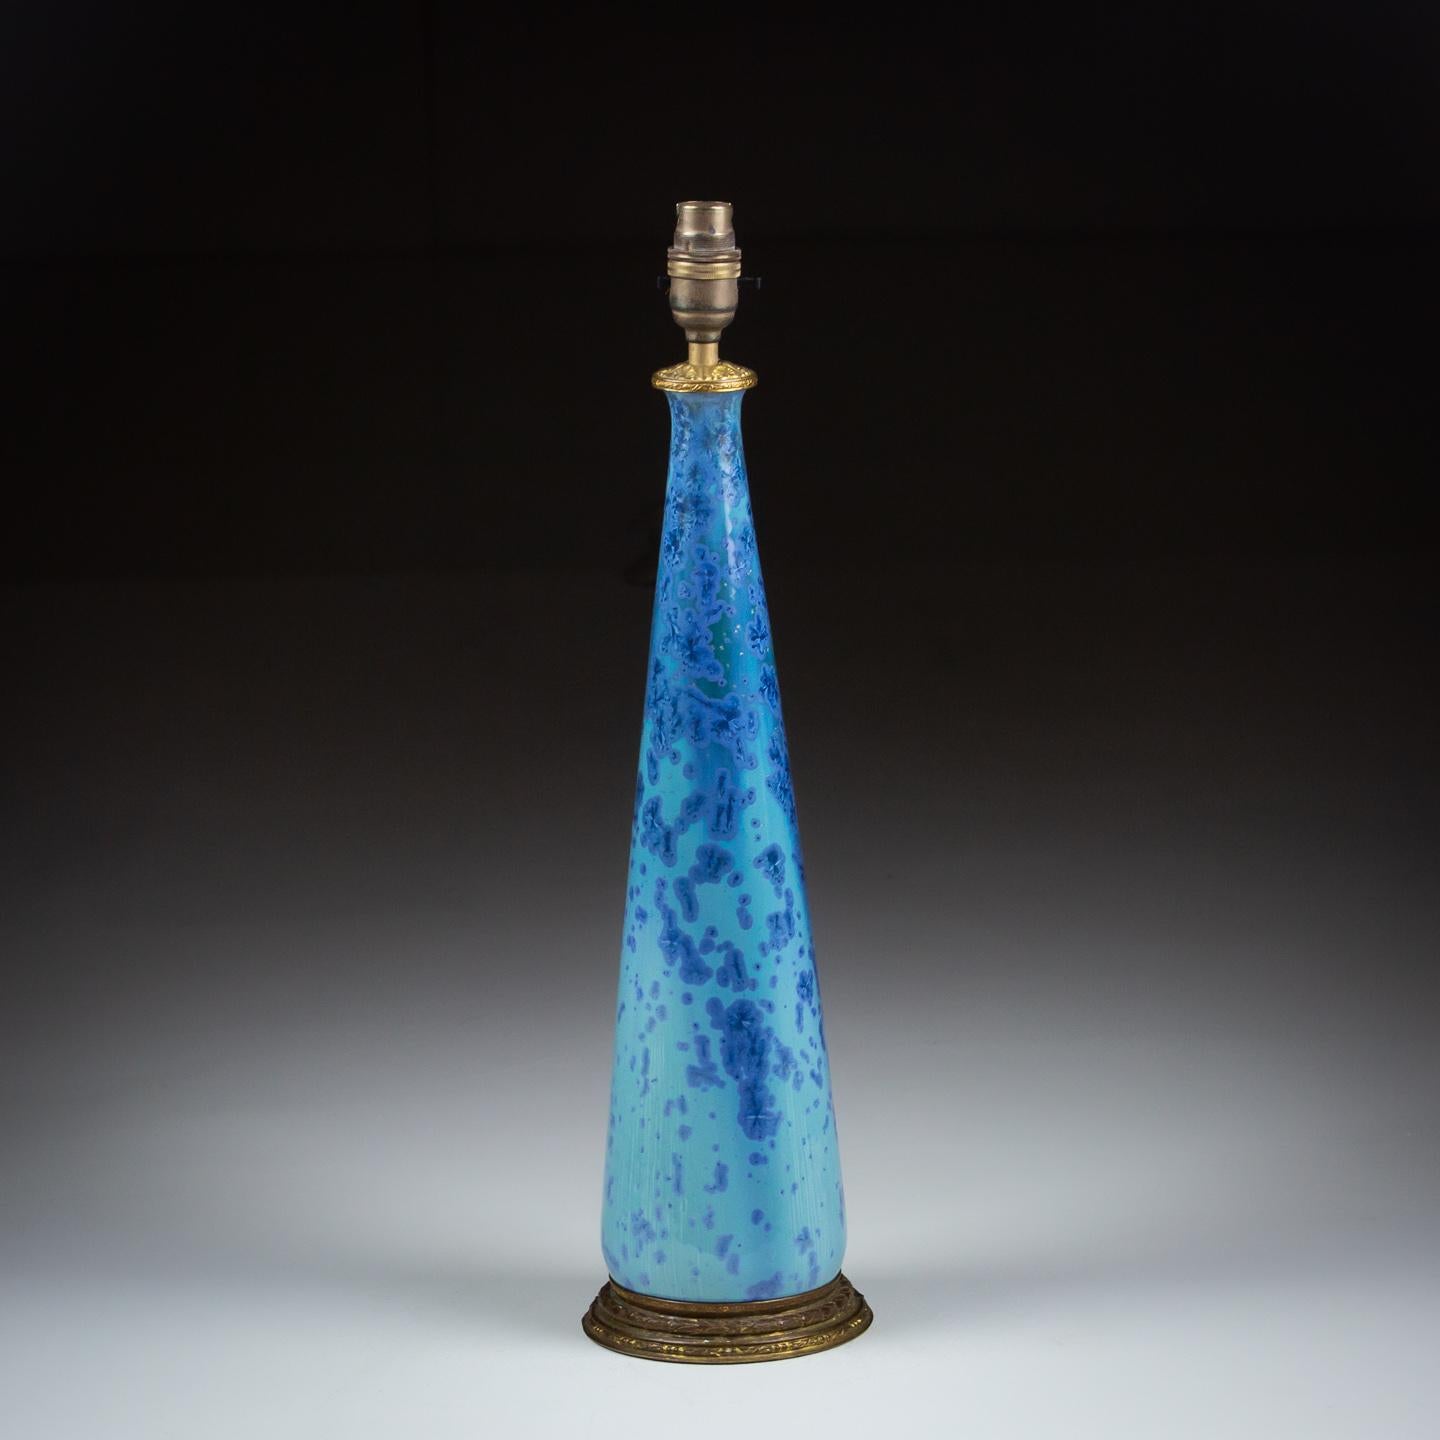 Impressionnant vase de Studio Pottery du début du 20e siècle, d'un bleu vibrant avec une glaçure presque holographique très inhabituelle qui transforme le ton et la nuance du bleu tout au long de la journée.

France Circa 1930

Recâblage en style